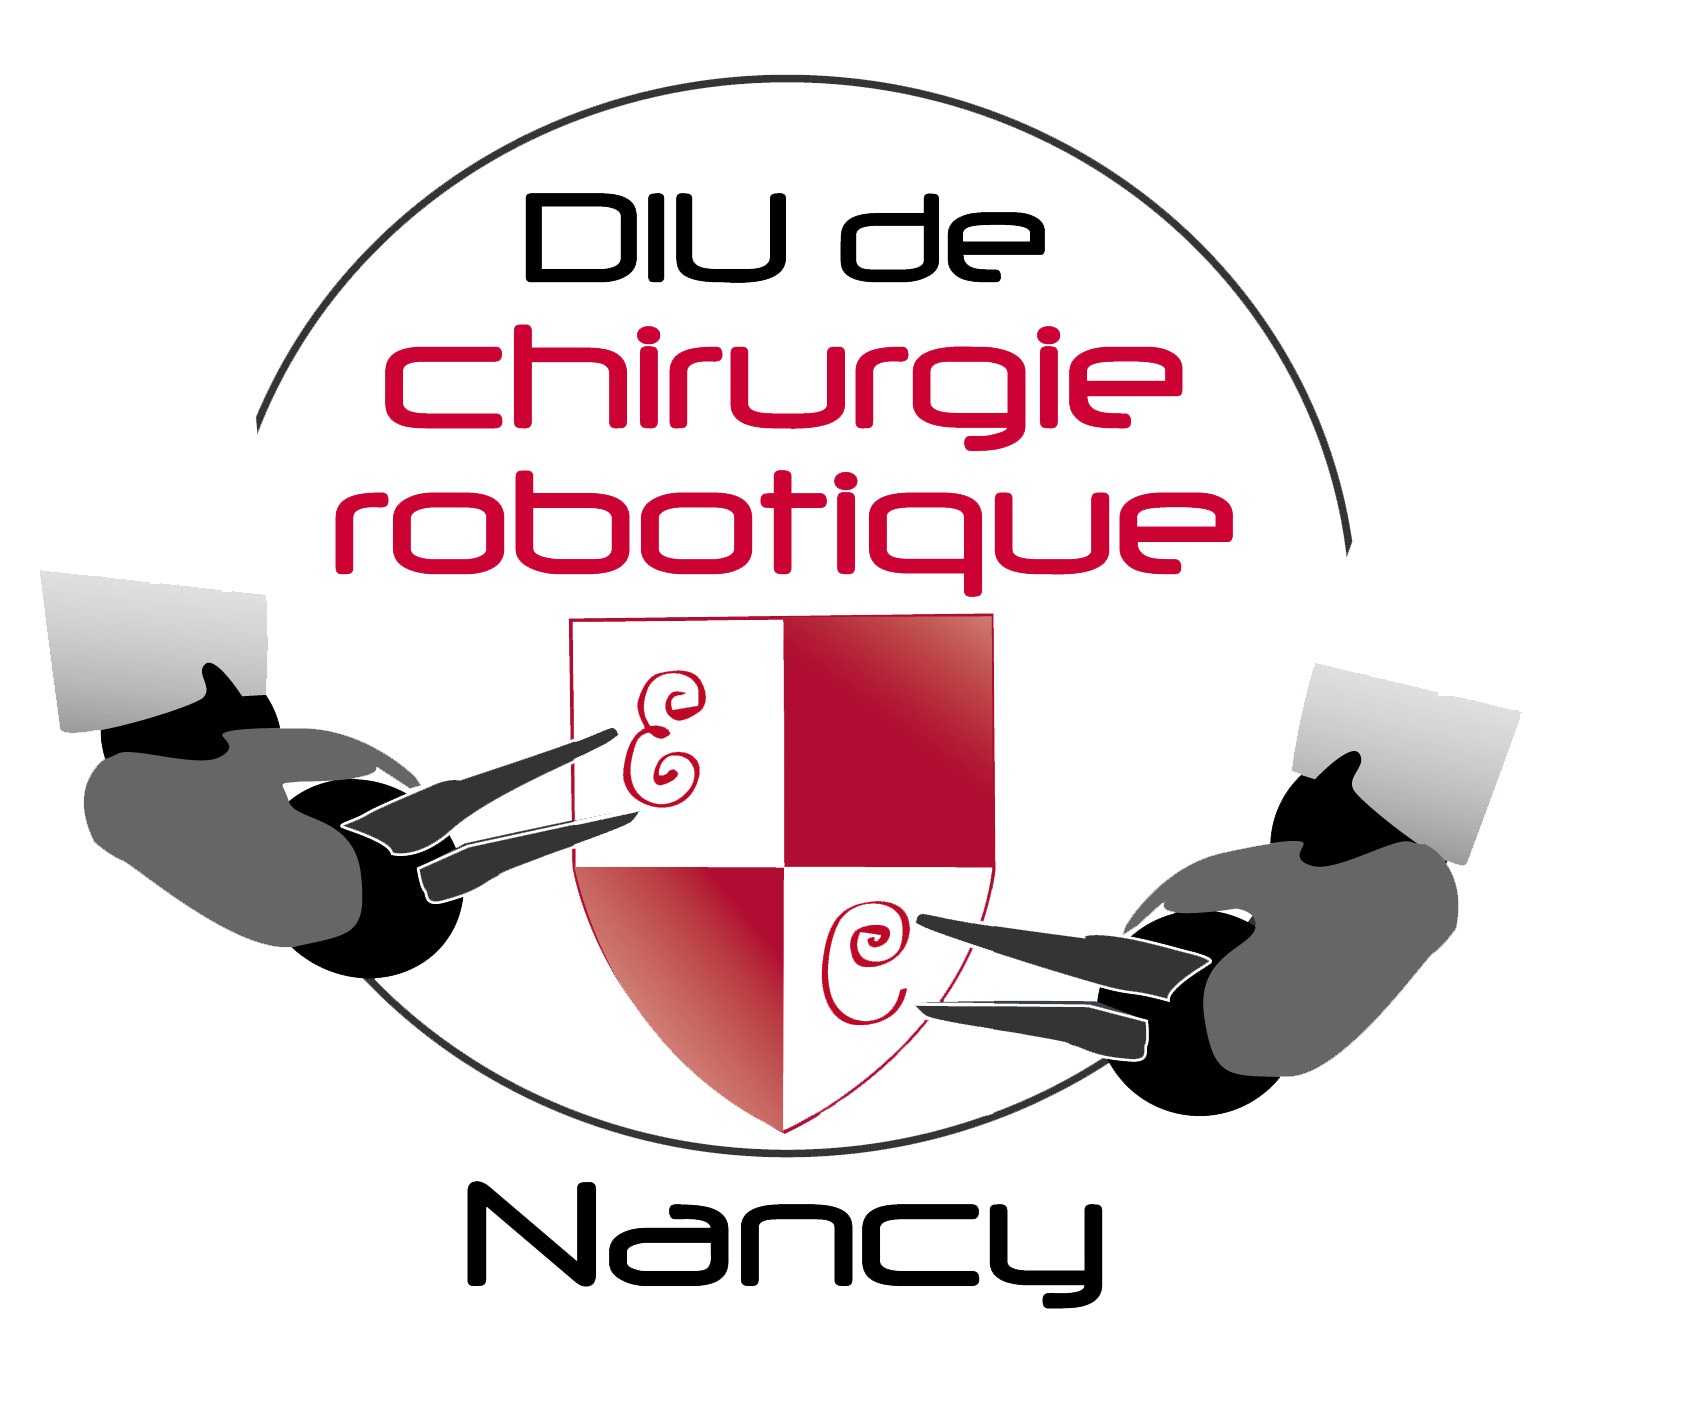 DIU de chirurgie robotique Nancy 2014 : Les Robots chirurgicaux du futur